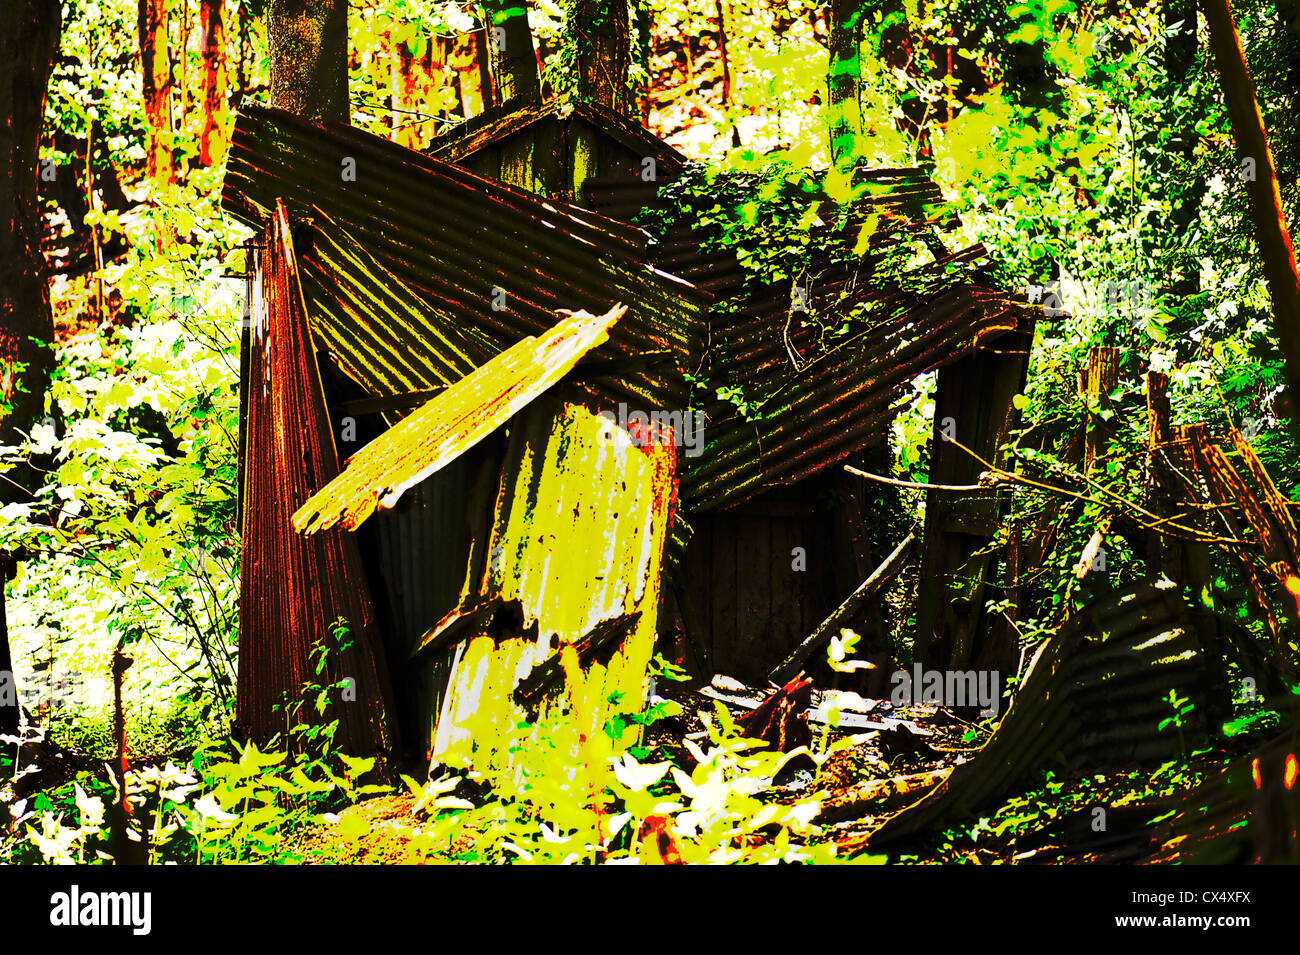 Image manipulée numériquement d'une cabane à l'abandon et abandonnés dans la forêt, Alriston, East Sussex, UK. Banque D'Images